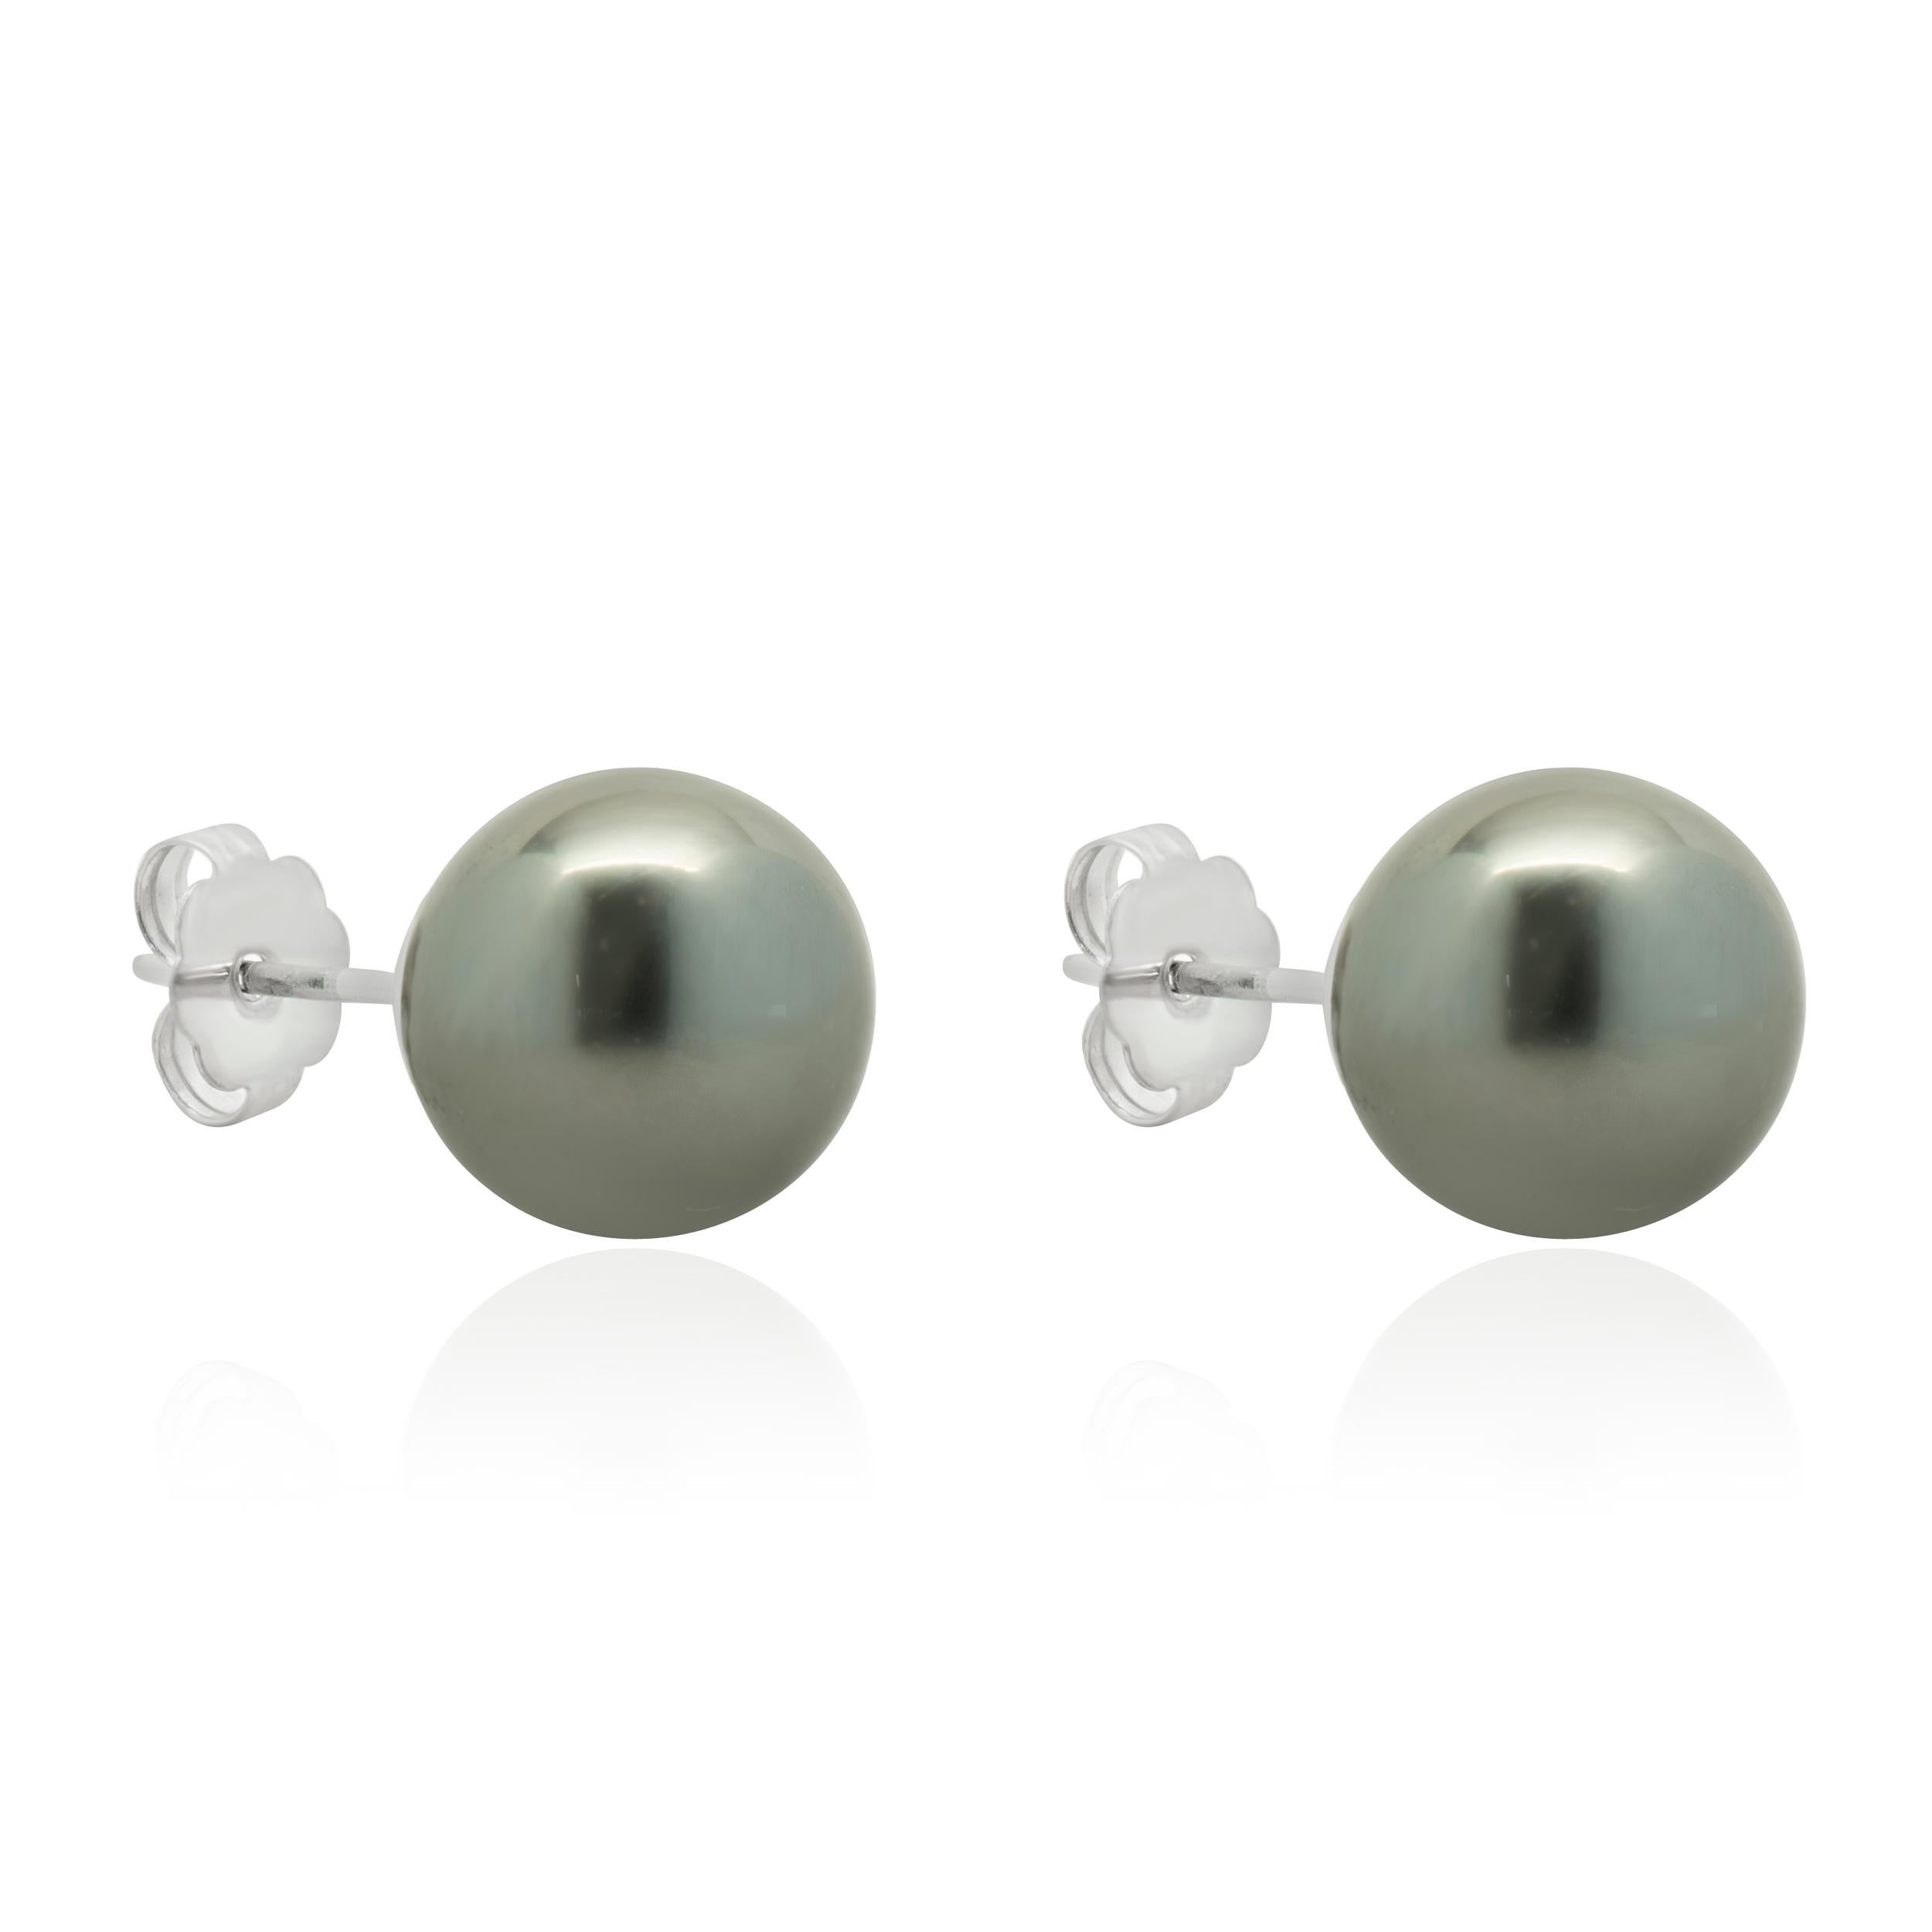 Concepteur : personnalisé
Matériau : Or blanc 14K 
Diamant : 2 diamants ronds de taille brillant = 0,02cttw
Couleur : G
Clarté : VS1
Poids : 2.15 grammes
Dimensions : les boucles d'oreilles mesurent 8.5mm
